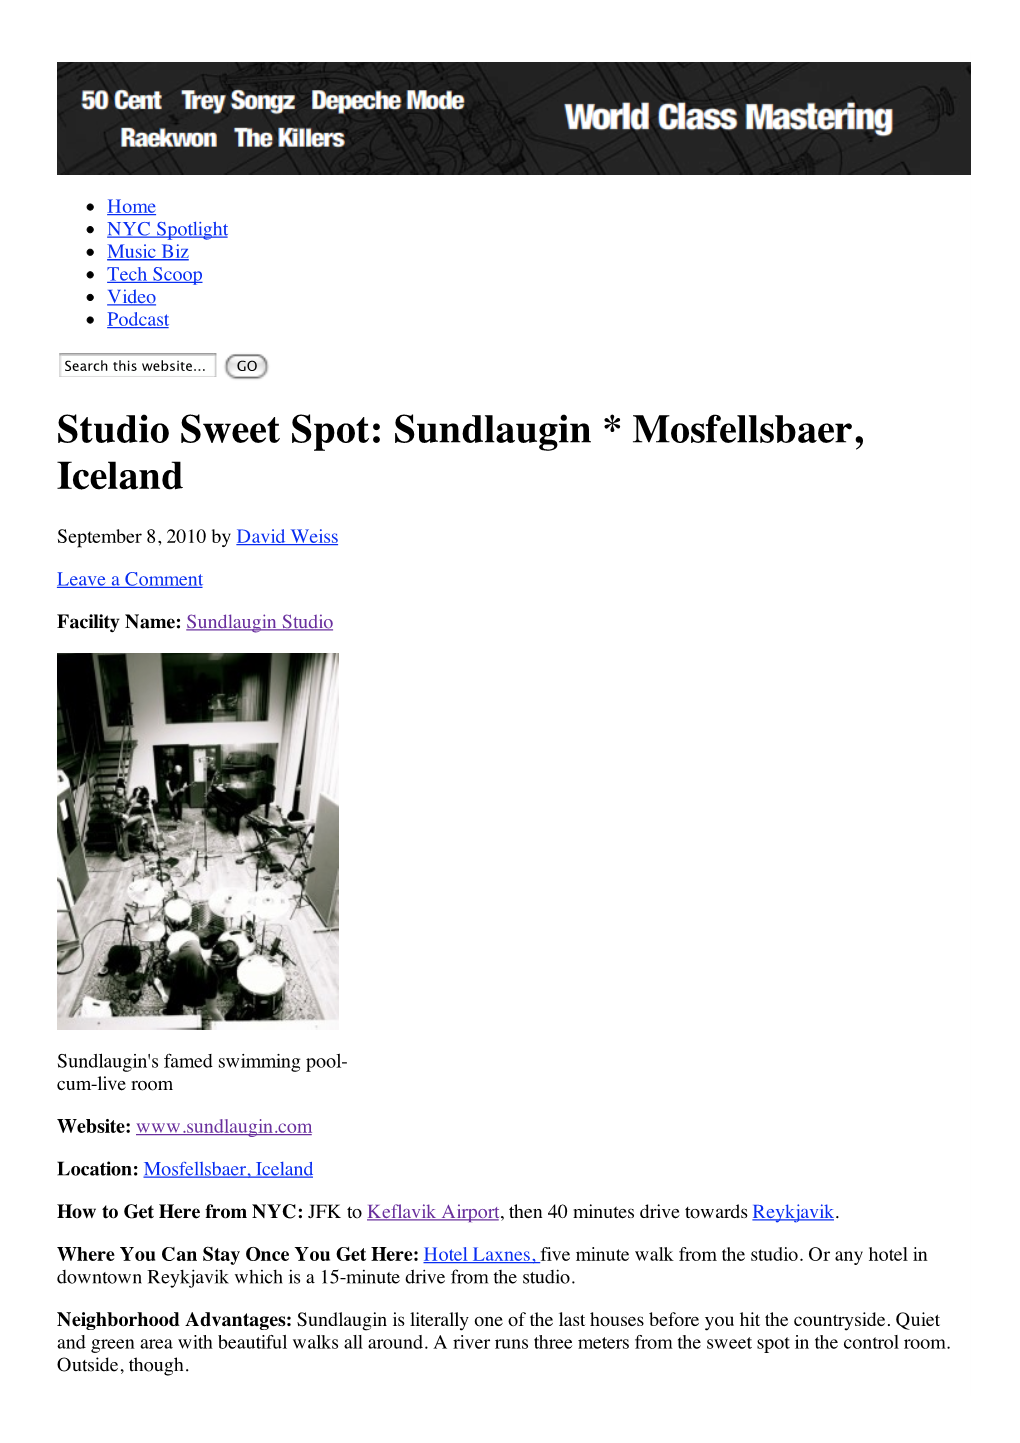 Studio Sweet Spot Sundlaugin * Mosfellsbaer